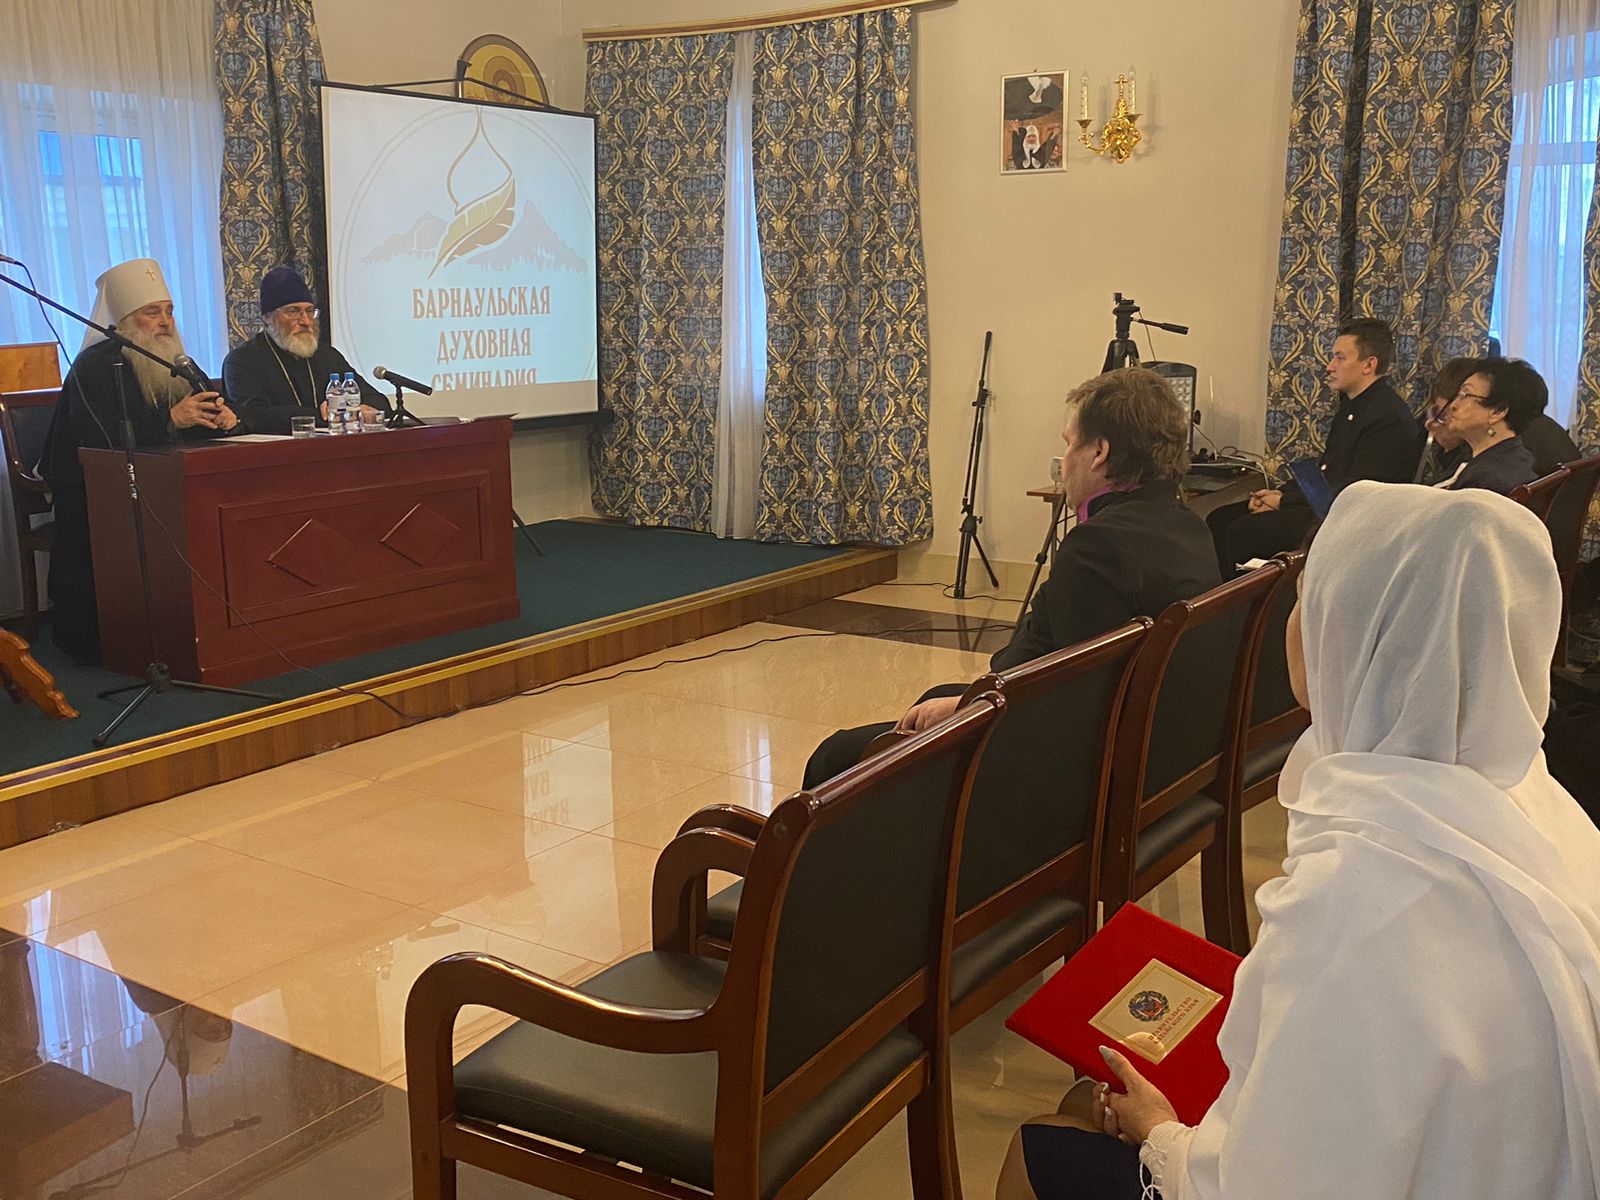 В Барнаульской духовной семинарии прошла региональная научно-практическая конференция «Христианство в Сибири»